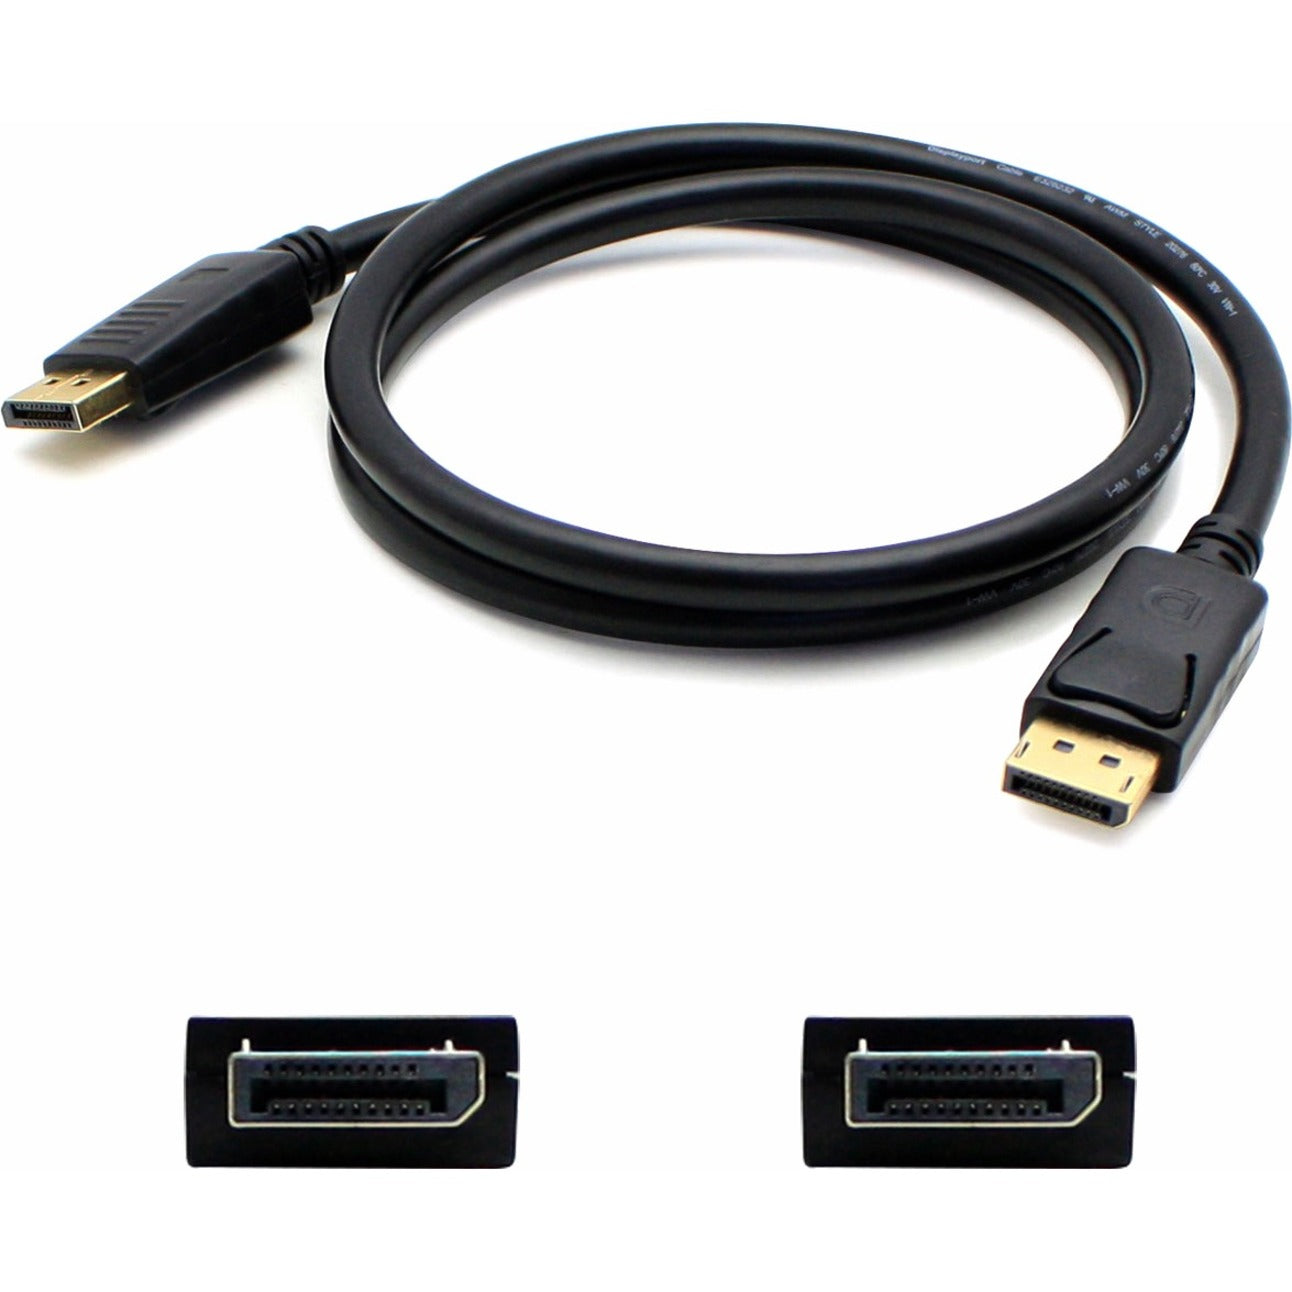 品牌名称: 显示端口 DISPLAYPORT1F 1ft (30cm)  DisplayPort 数据线 - 公对公，铜导线，黑色